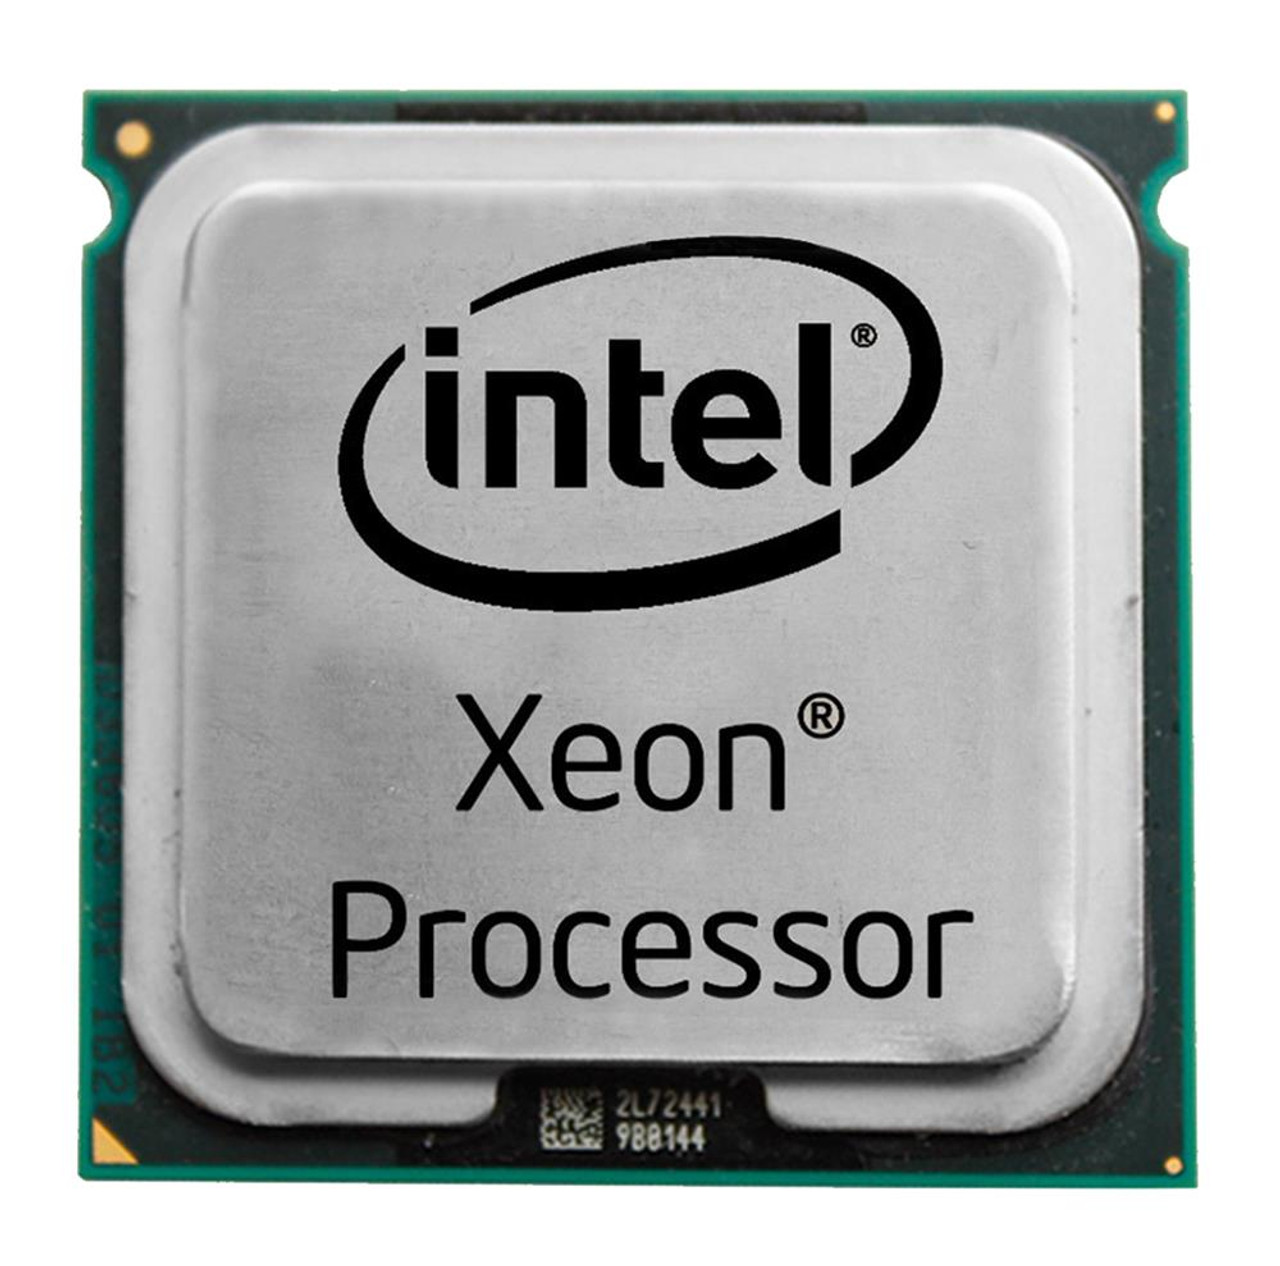 SLAG9 Intel Xeon 5160 Dual-Core 3.00GHz 1333MHz FSB 4MB L2 Cache Socket LGA771 Processor